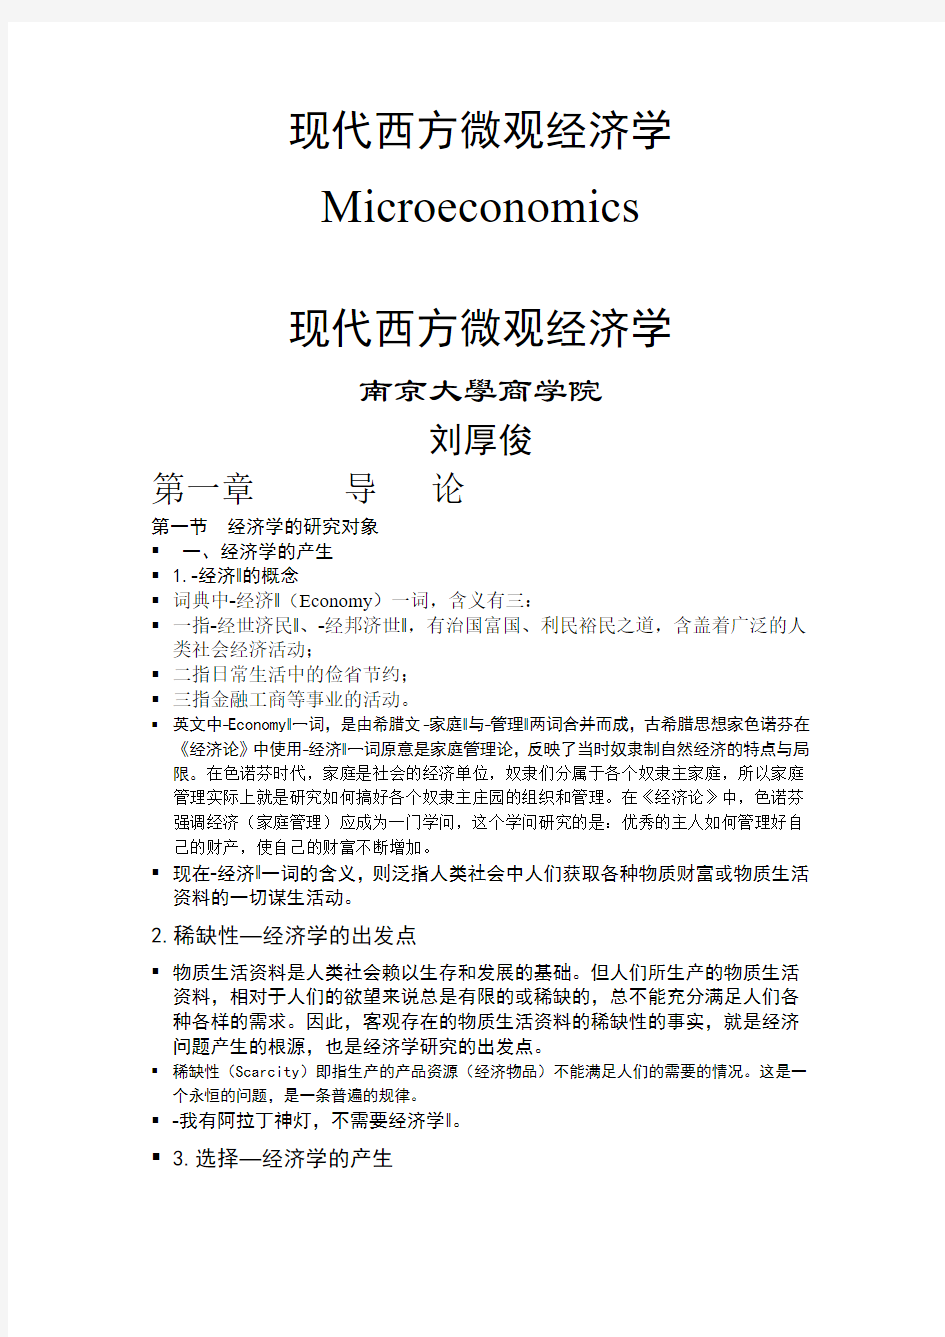 现代西方微观经济学(南京大学商学院)刘厚俊